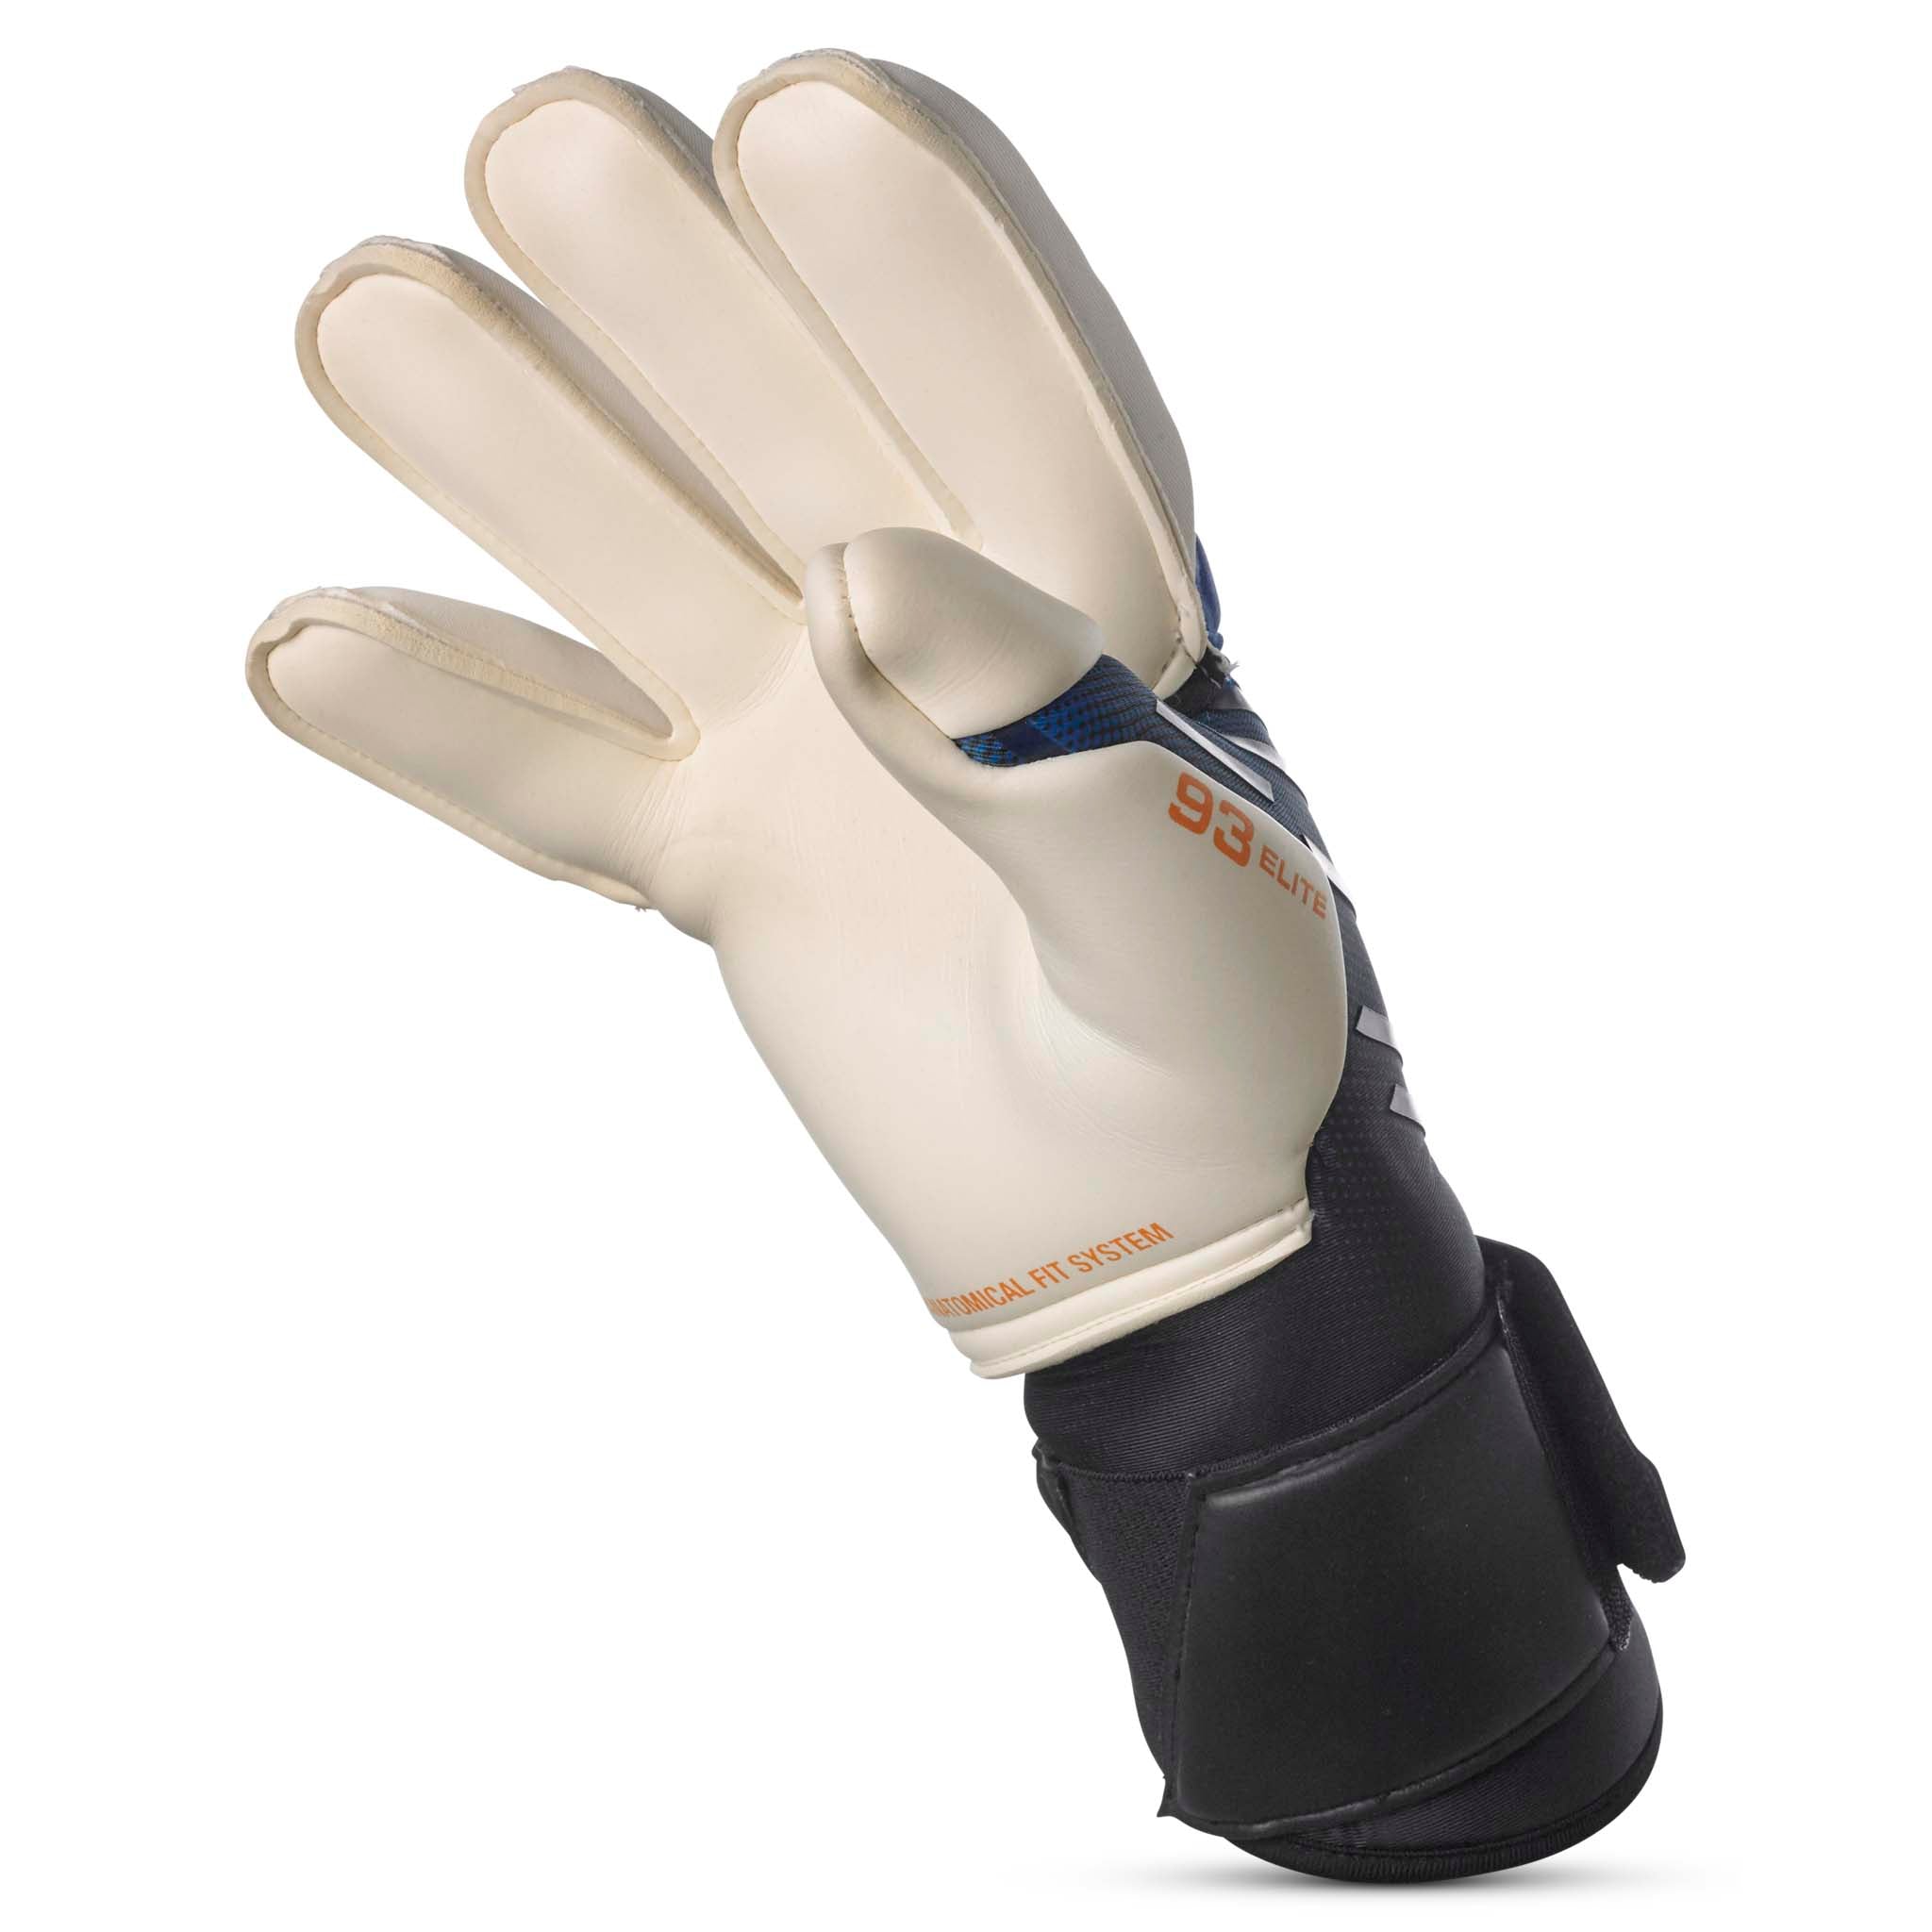 Goalkeeper gloves - 93 Elite #colour_blue/white